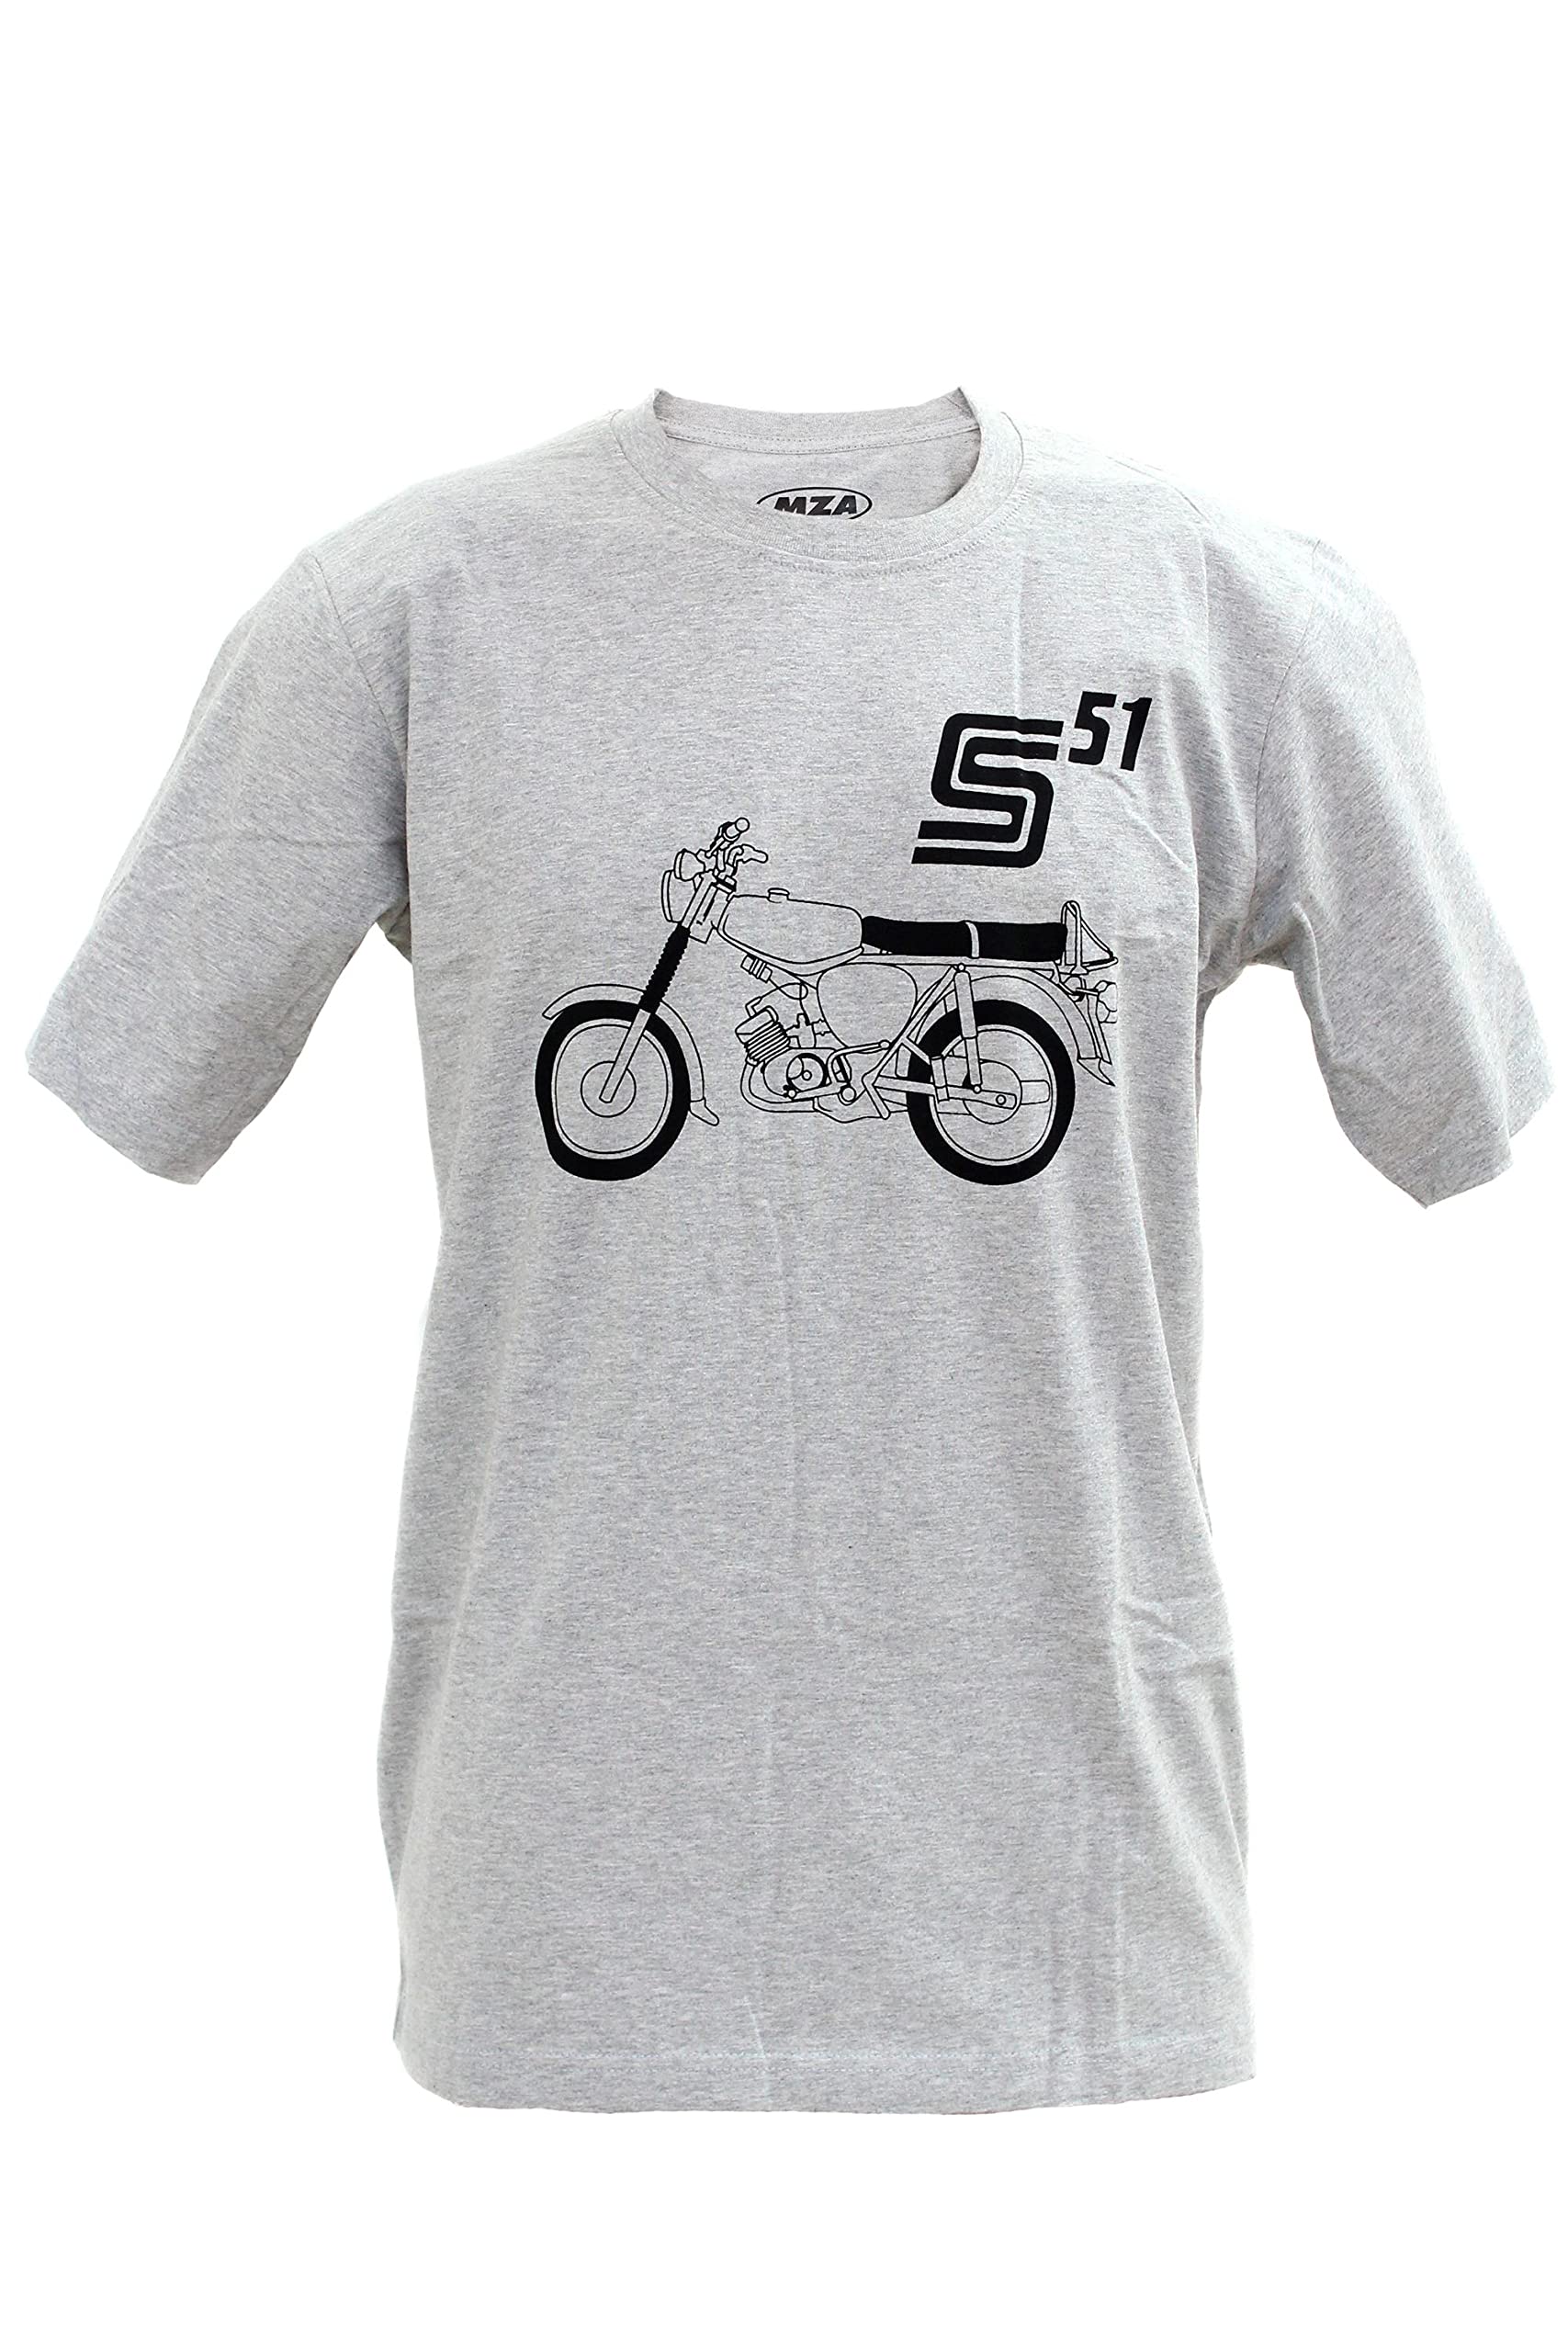 Simson T-Shirt - S51 Basic - hellgrau meliert, Größe: XS bis XXXL, 100% Baumwolle, original MZA Fan-Artikel, Größe:M von MZA